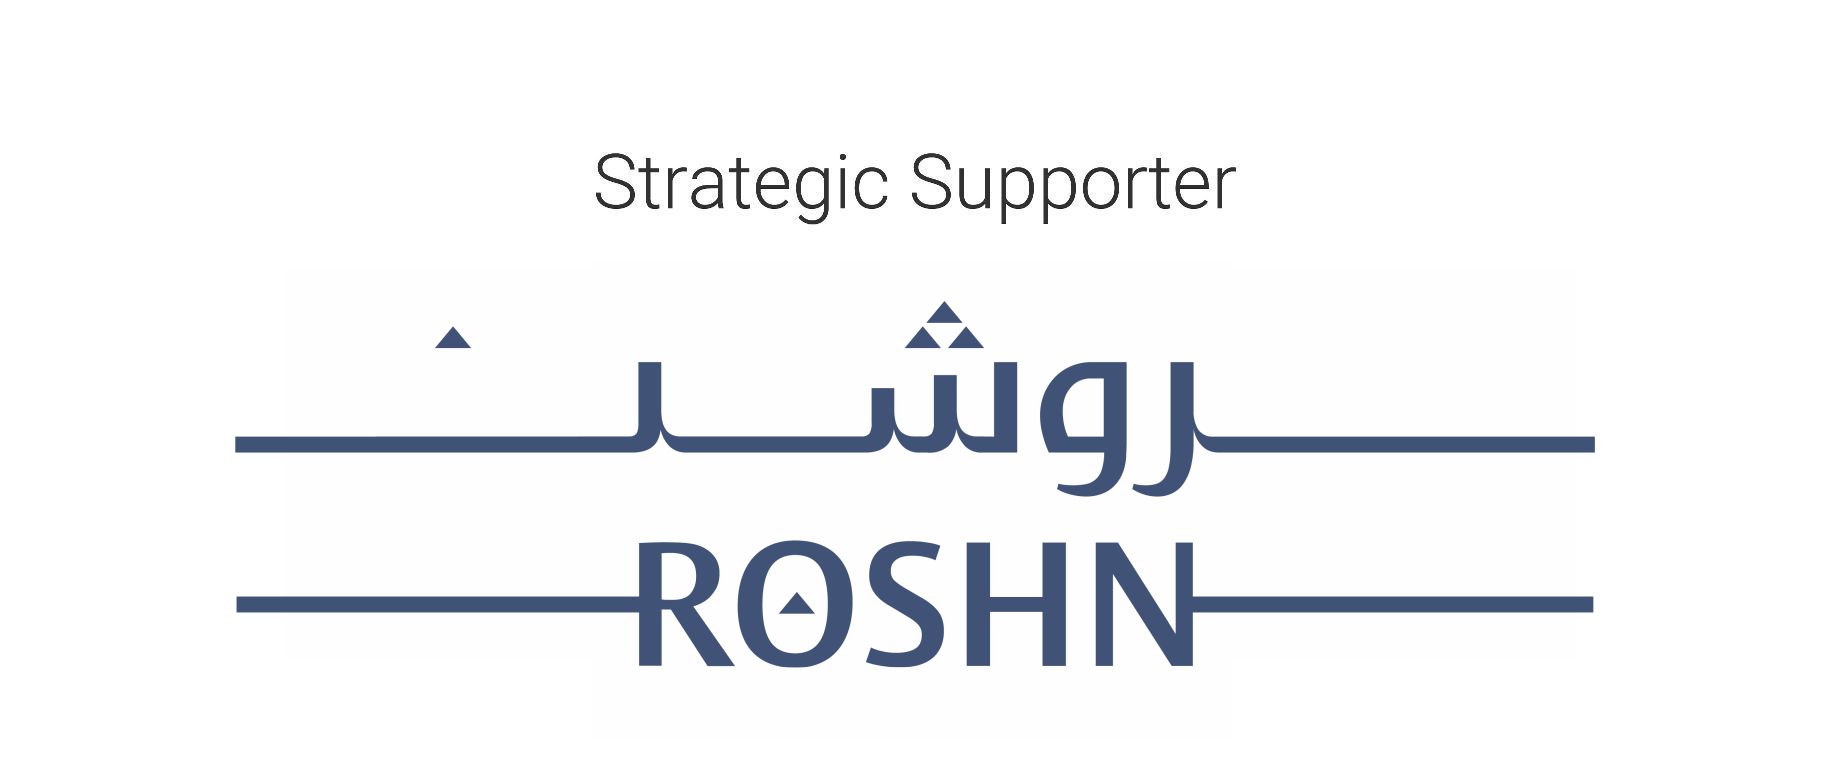 roshn-logo1